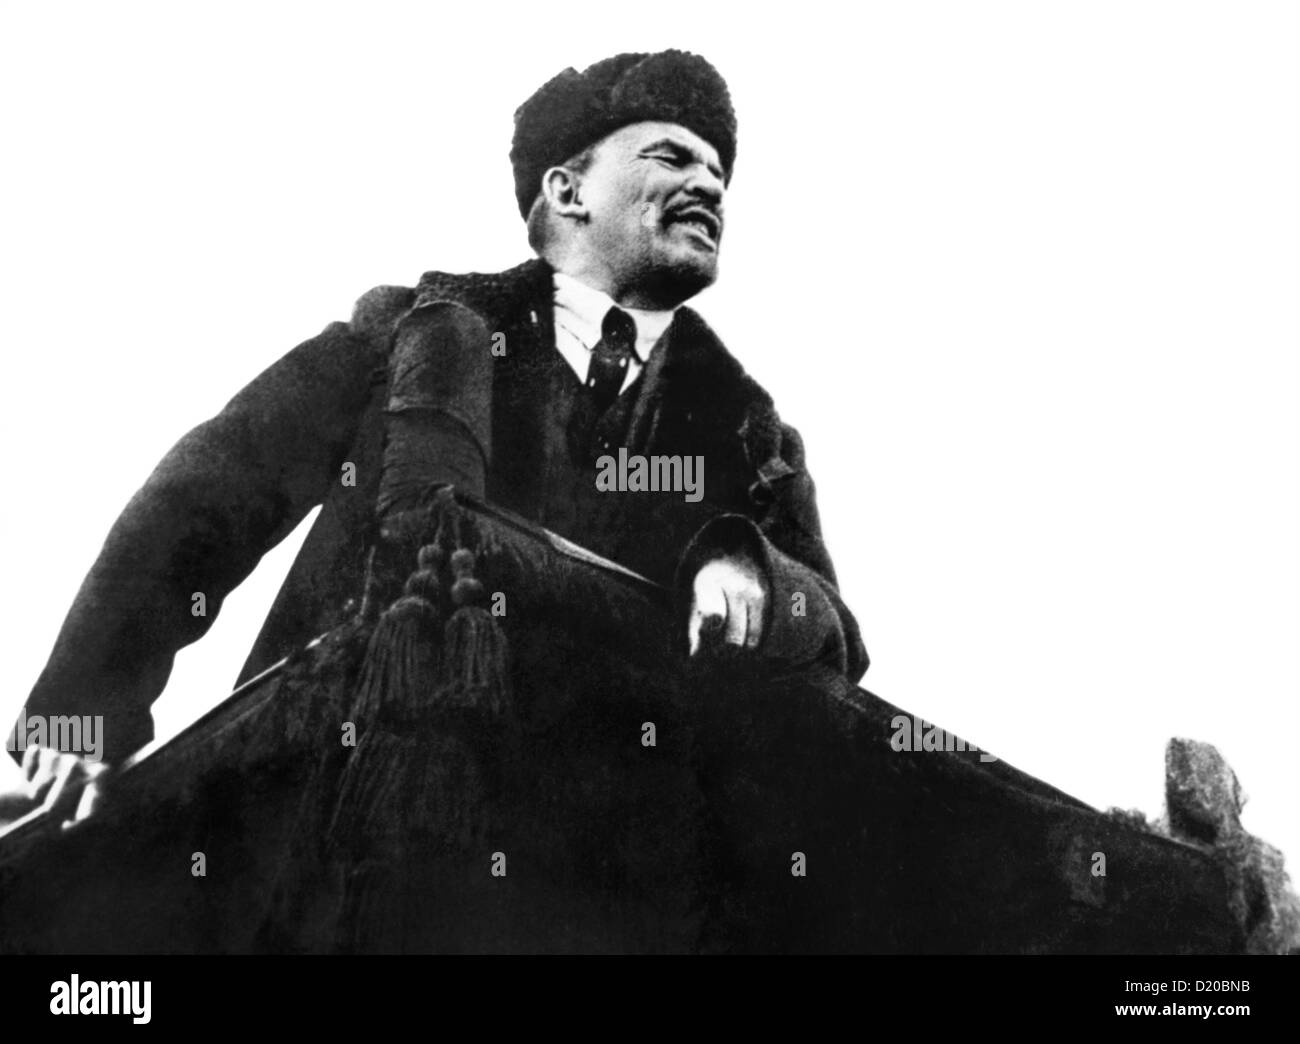 Vladimir Lenin auf dem Roten Platz in Moskau am 7. November 1918. Lenin Adressierung das Publikum feiert den 1. Jahrestag der großen Sozialistischen Oktoberrevolution. Stockfoto